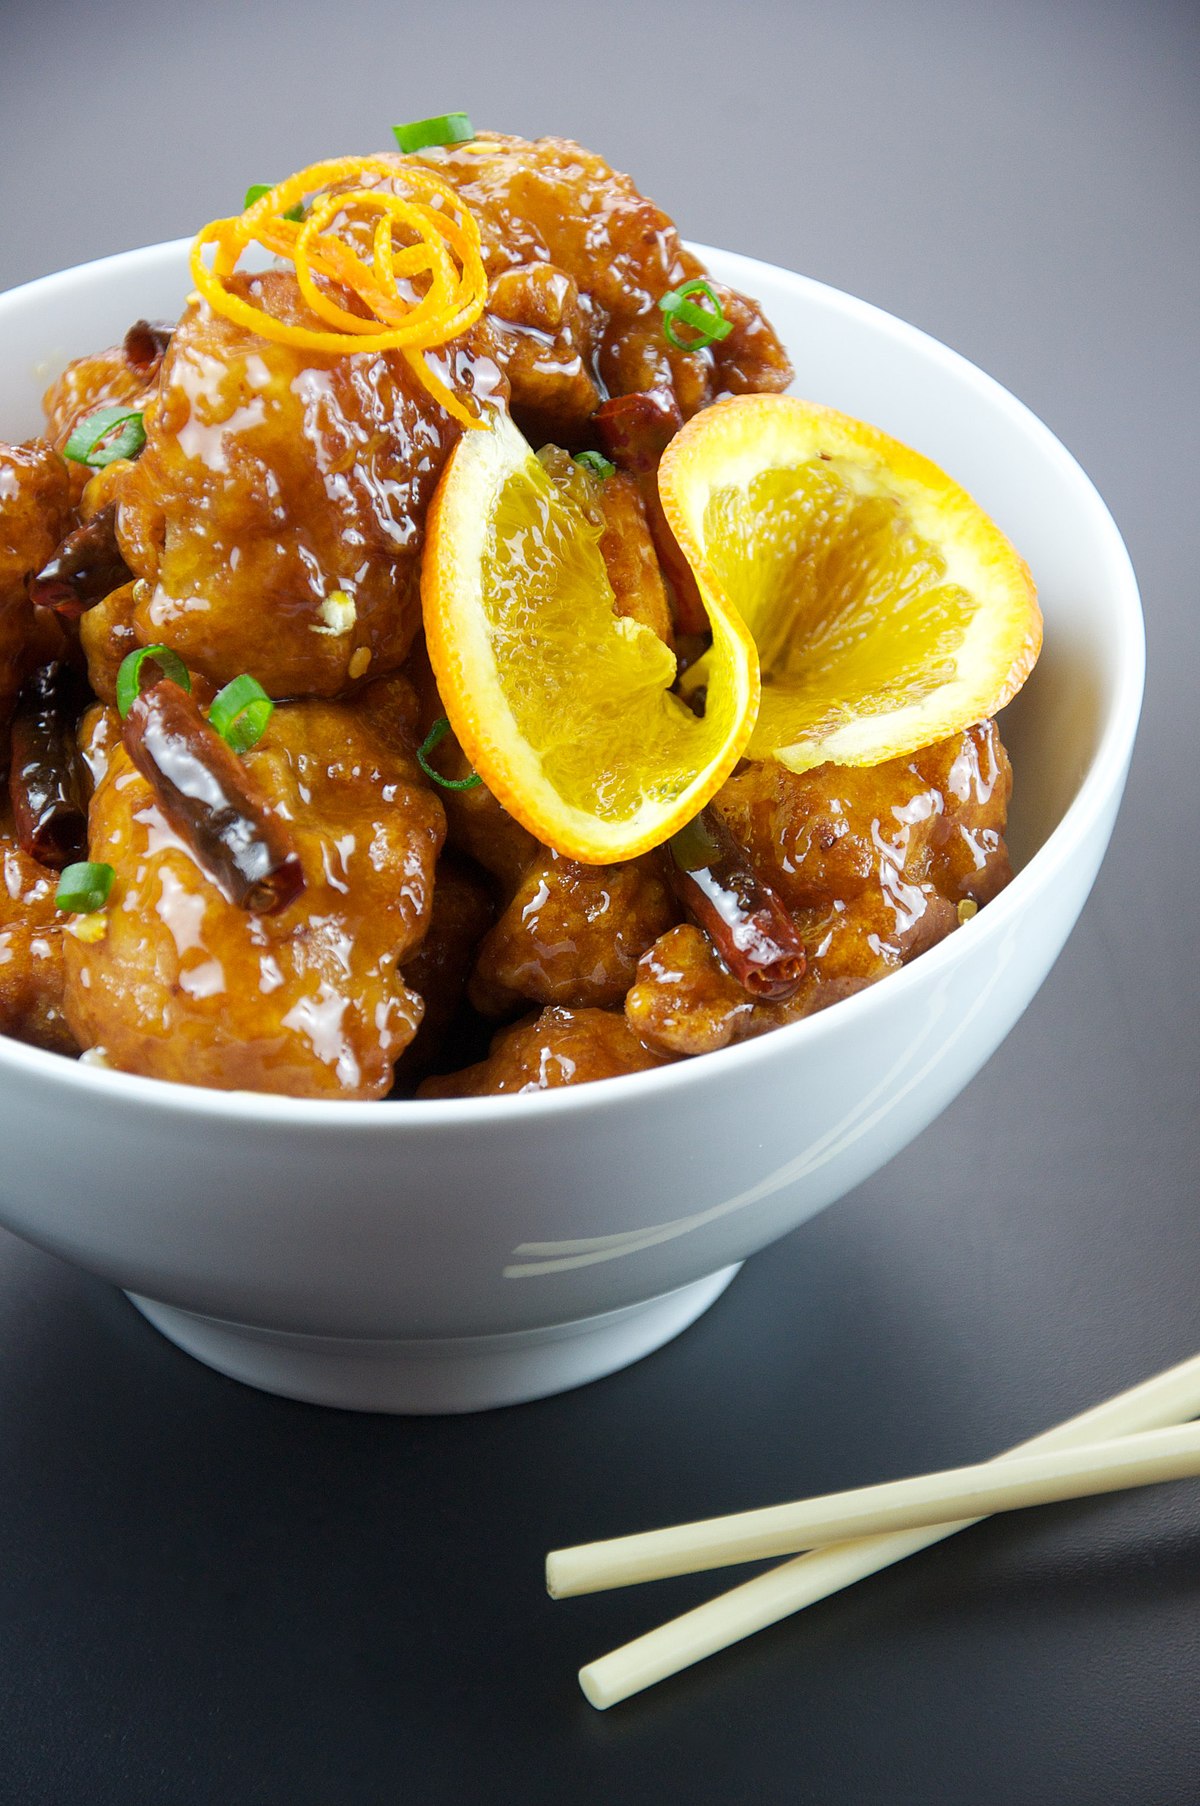 Gà Tồm Cam là loại gà đặc trưng không chỉ trong ẩm thực Trung Hoa mà còn trên thế giới. Với hương vị đậm đà và chế biến đa dạng, Gà Tồm Cam luôn là một trong những món ăn hấp dẫn của nhiều người. Hãy tìm hiểu thêm về loại gà này thông qua những hình ảnh trên Wikipedia.